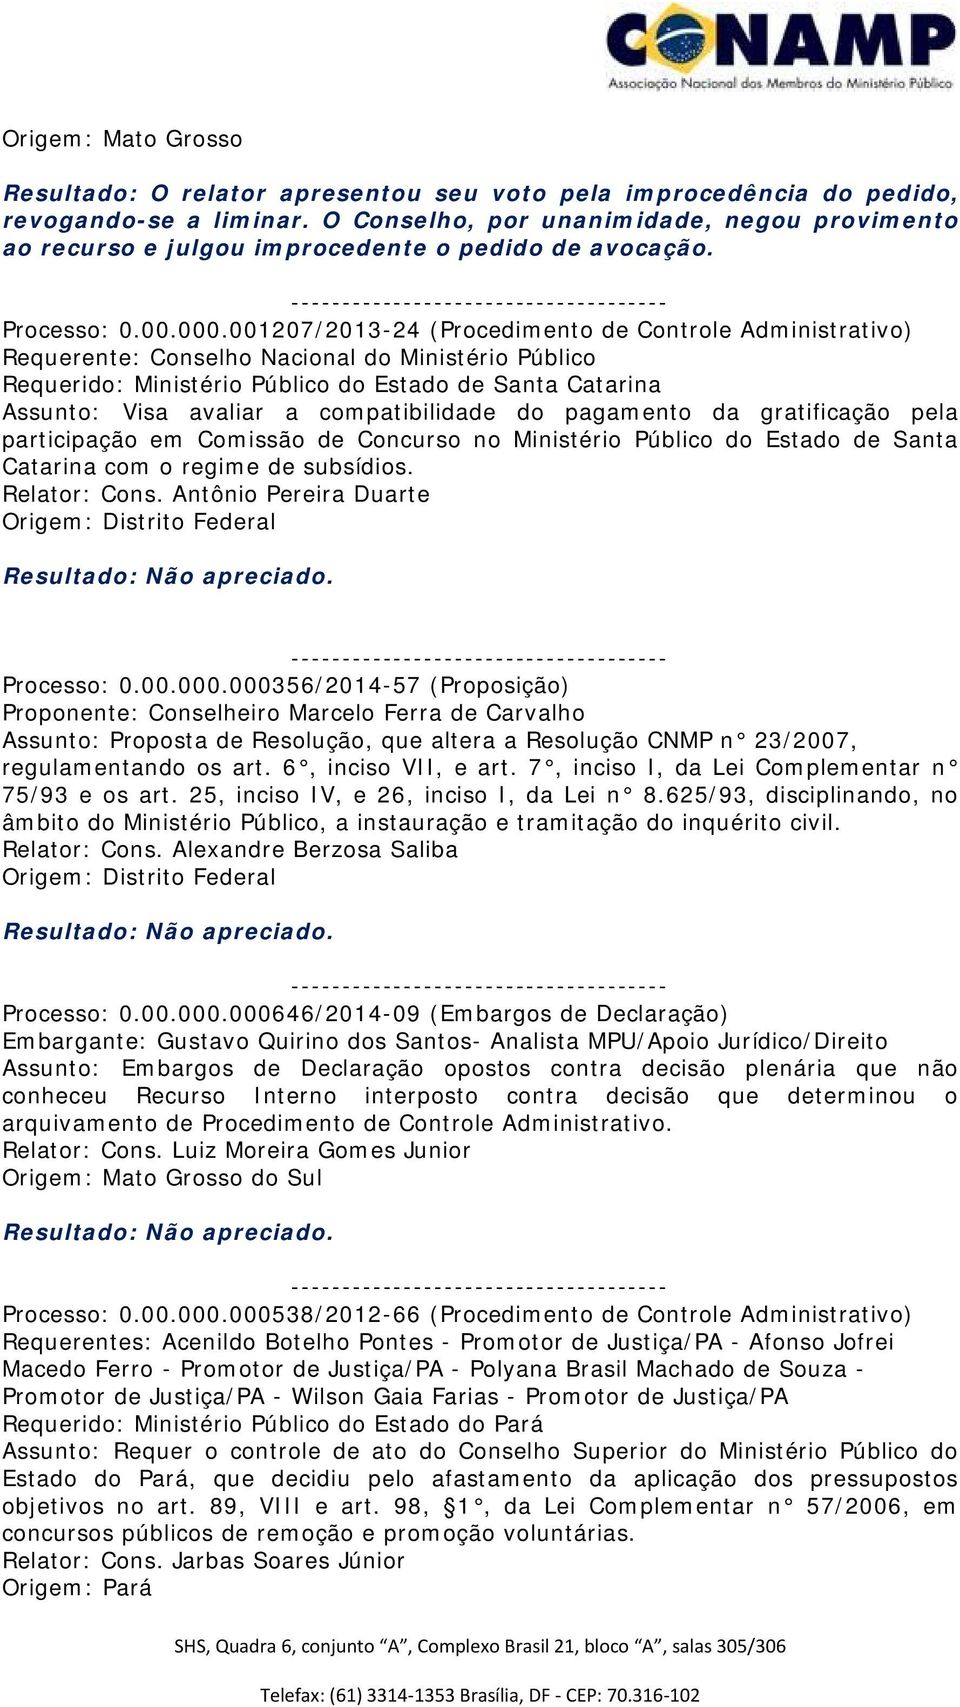 001207/2013-24 (Procedimento de Controle Administrativo) Requerido: Ministério Público do Estado de Santa Catarina Assunto: Visa avaliar a compatibilidade do pagamento da gratificação pela